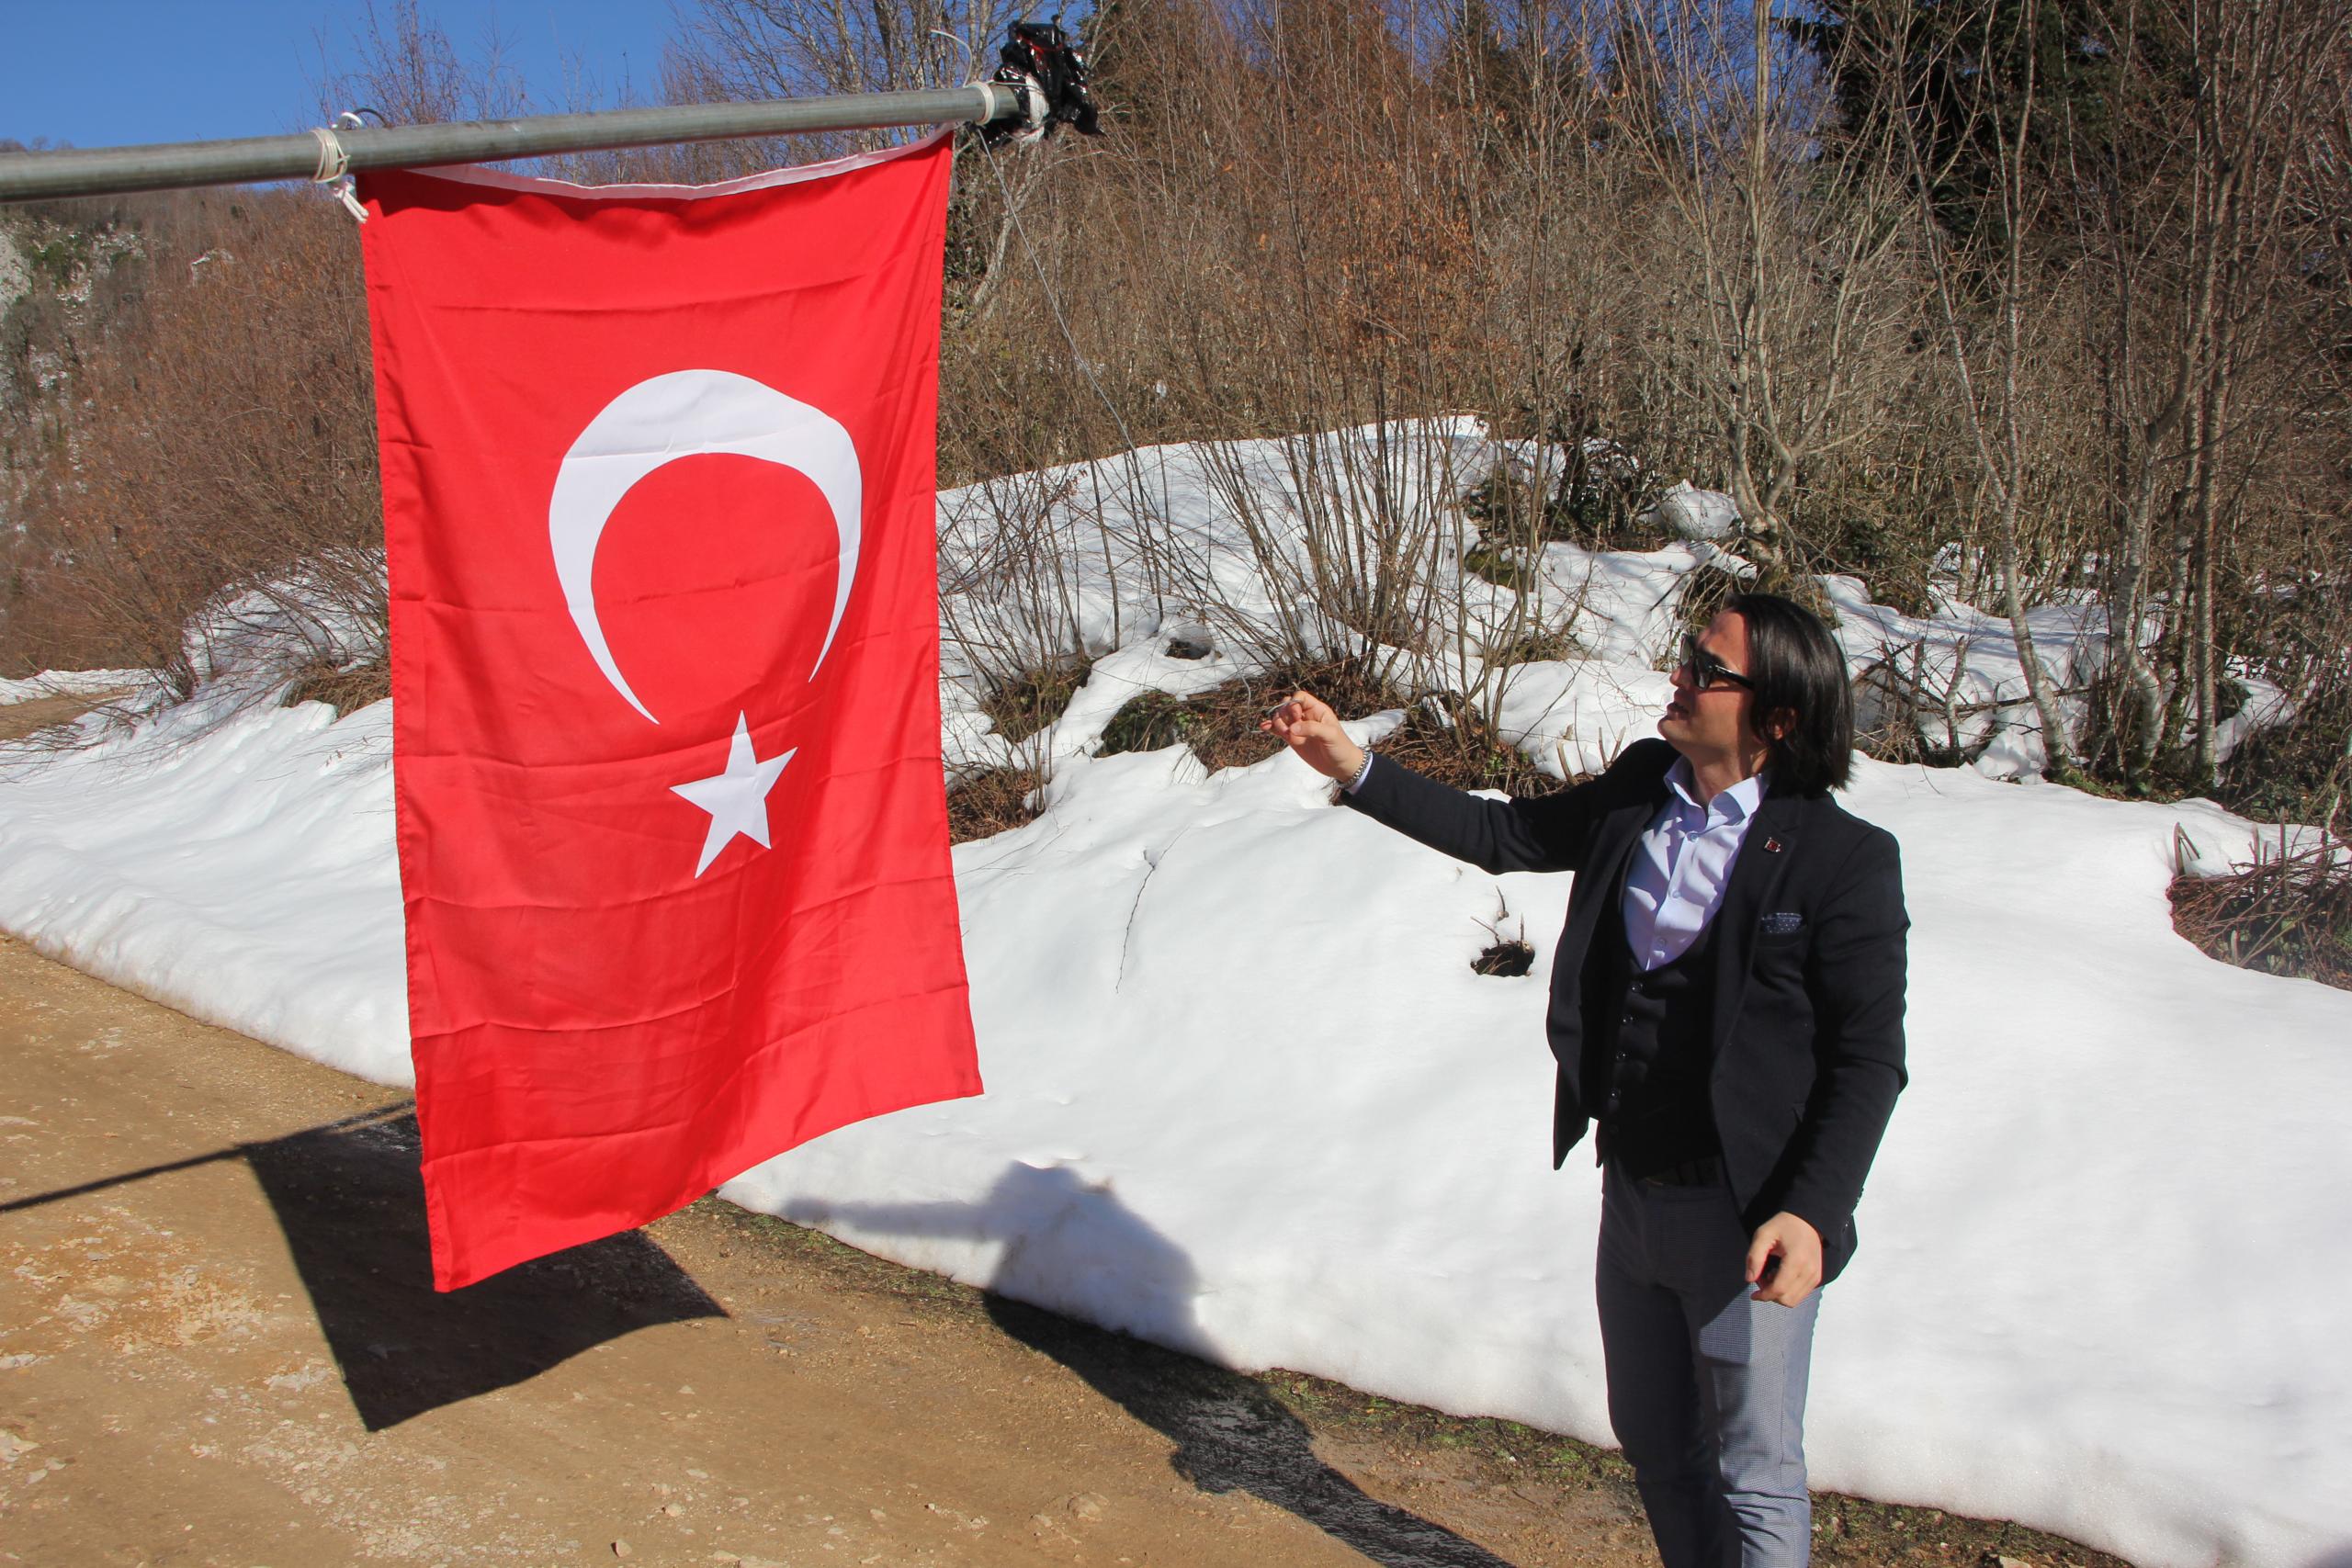 Cide’de duygulandıran davranış! Yıpranmış Türk bayraklarını tek tek değiştiriyor